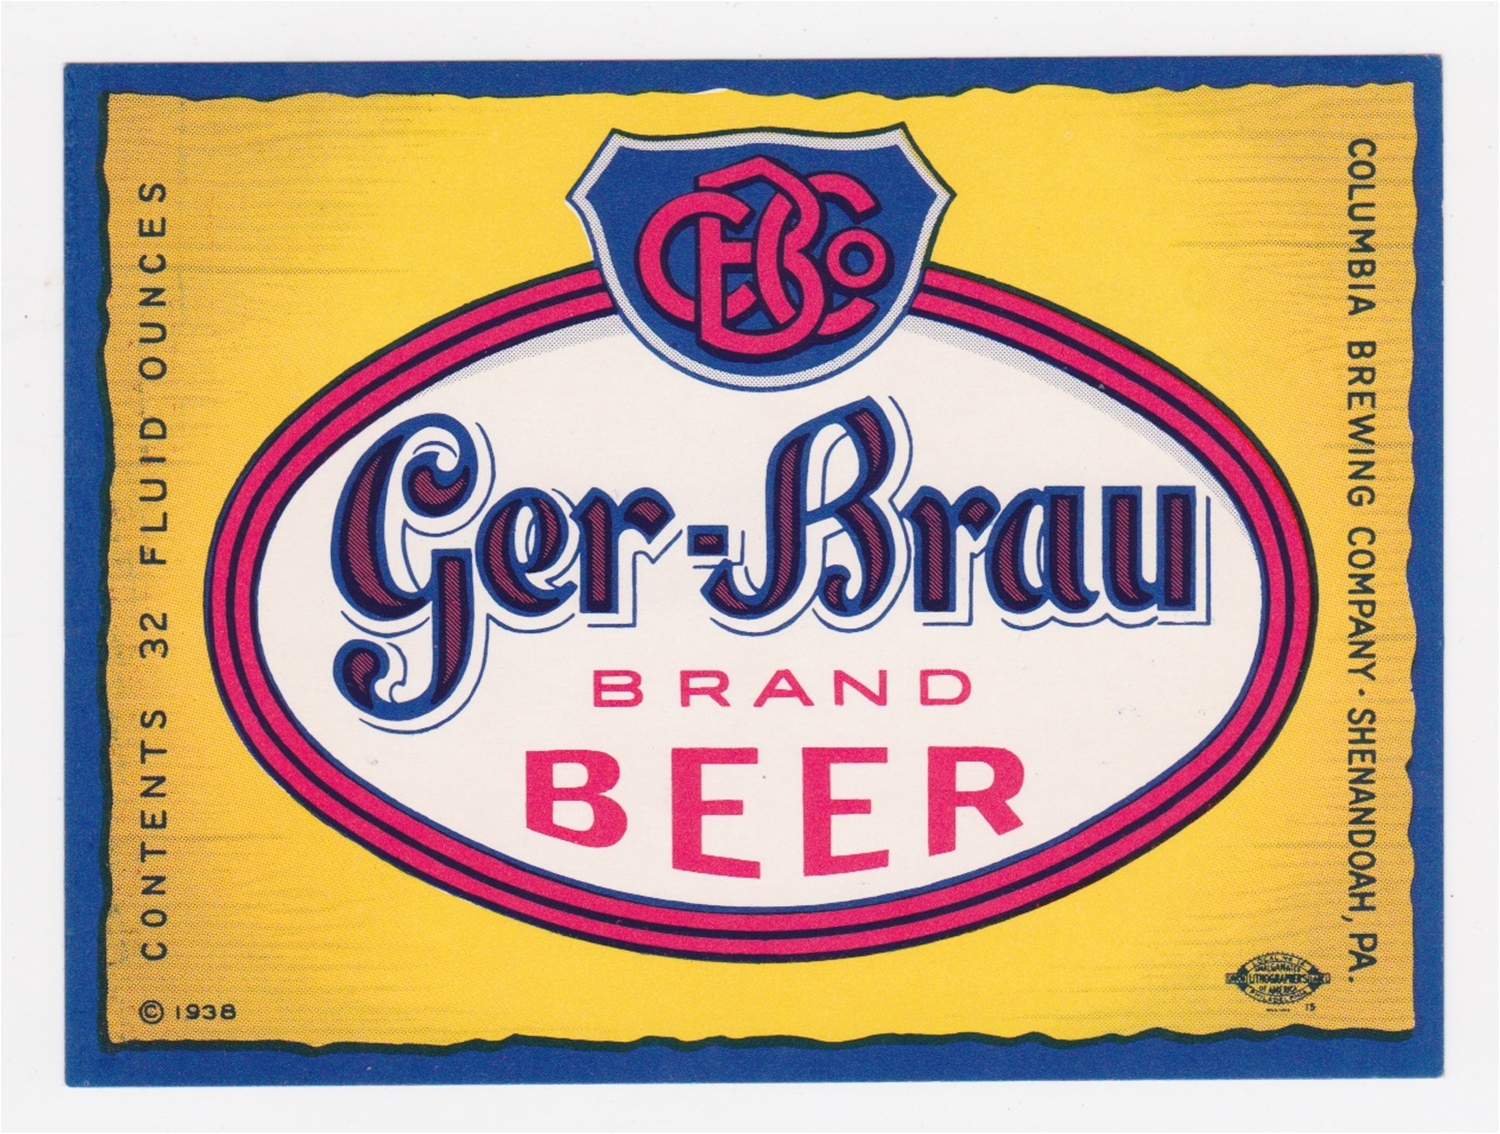 Ger-Brau Beer Label